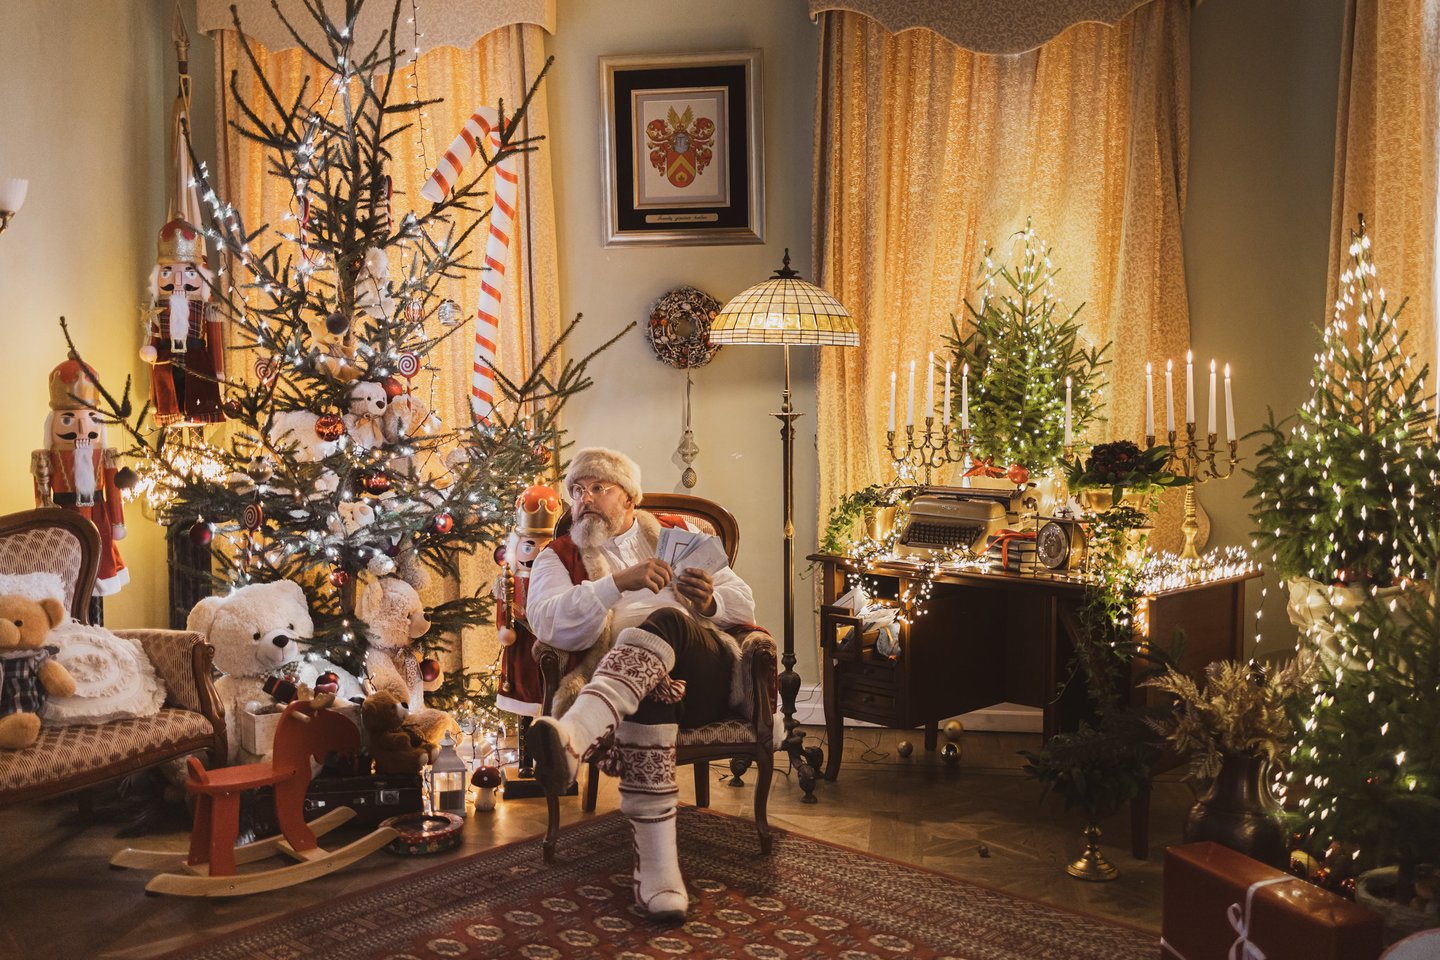 Virtuvės šefas Rokas Galvonas atveria duris į įspūdingą Kalėdų senelio rezidenciją: „Čia kiekvienas atsidurs savo vaikystės pasakoje“.<br>Pr. siuntėjo nuotr.